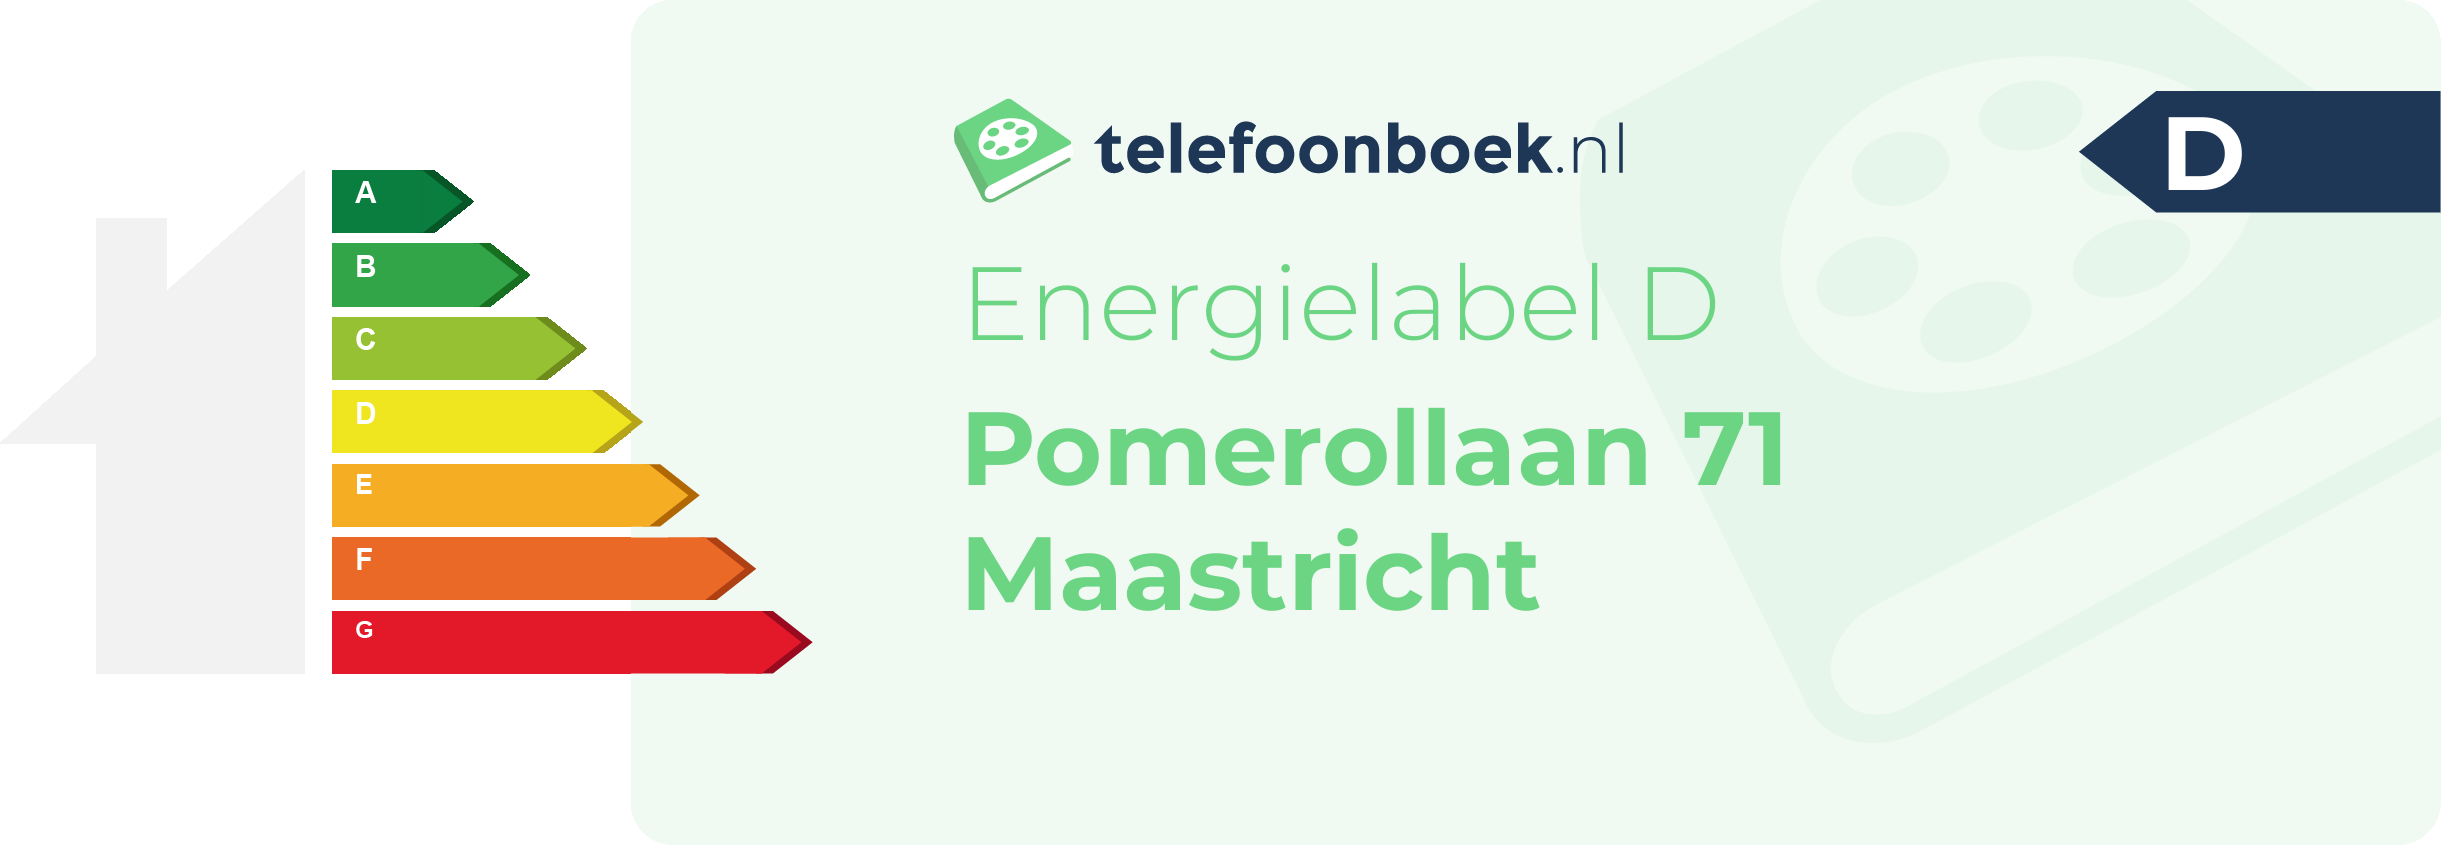 Energielabel Pomerollaan 71 Maastricht